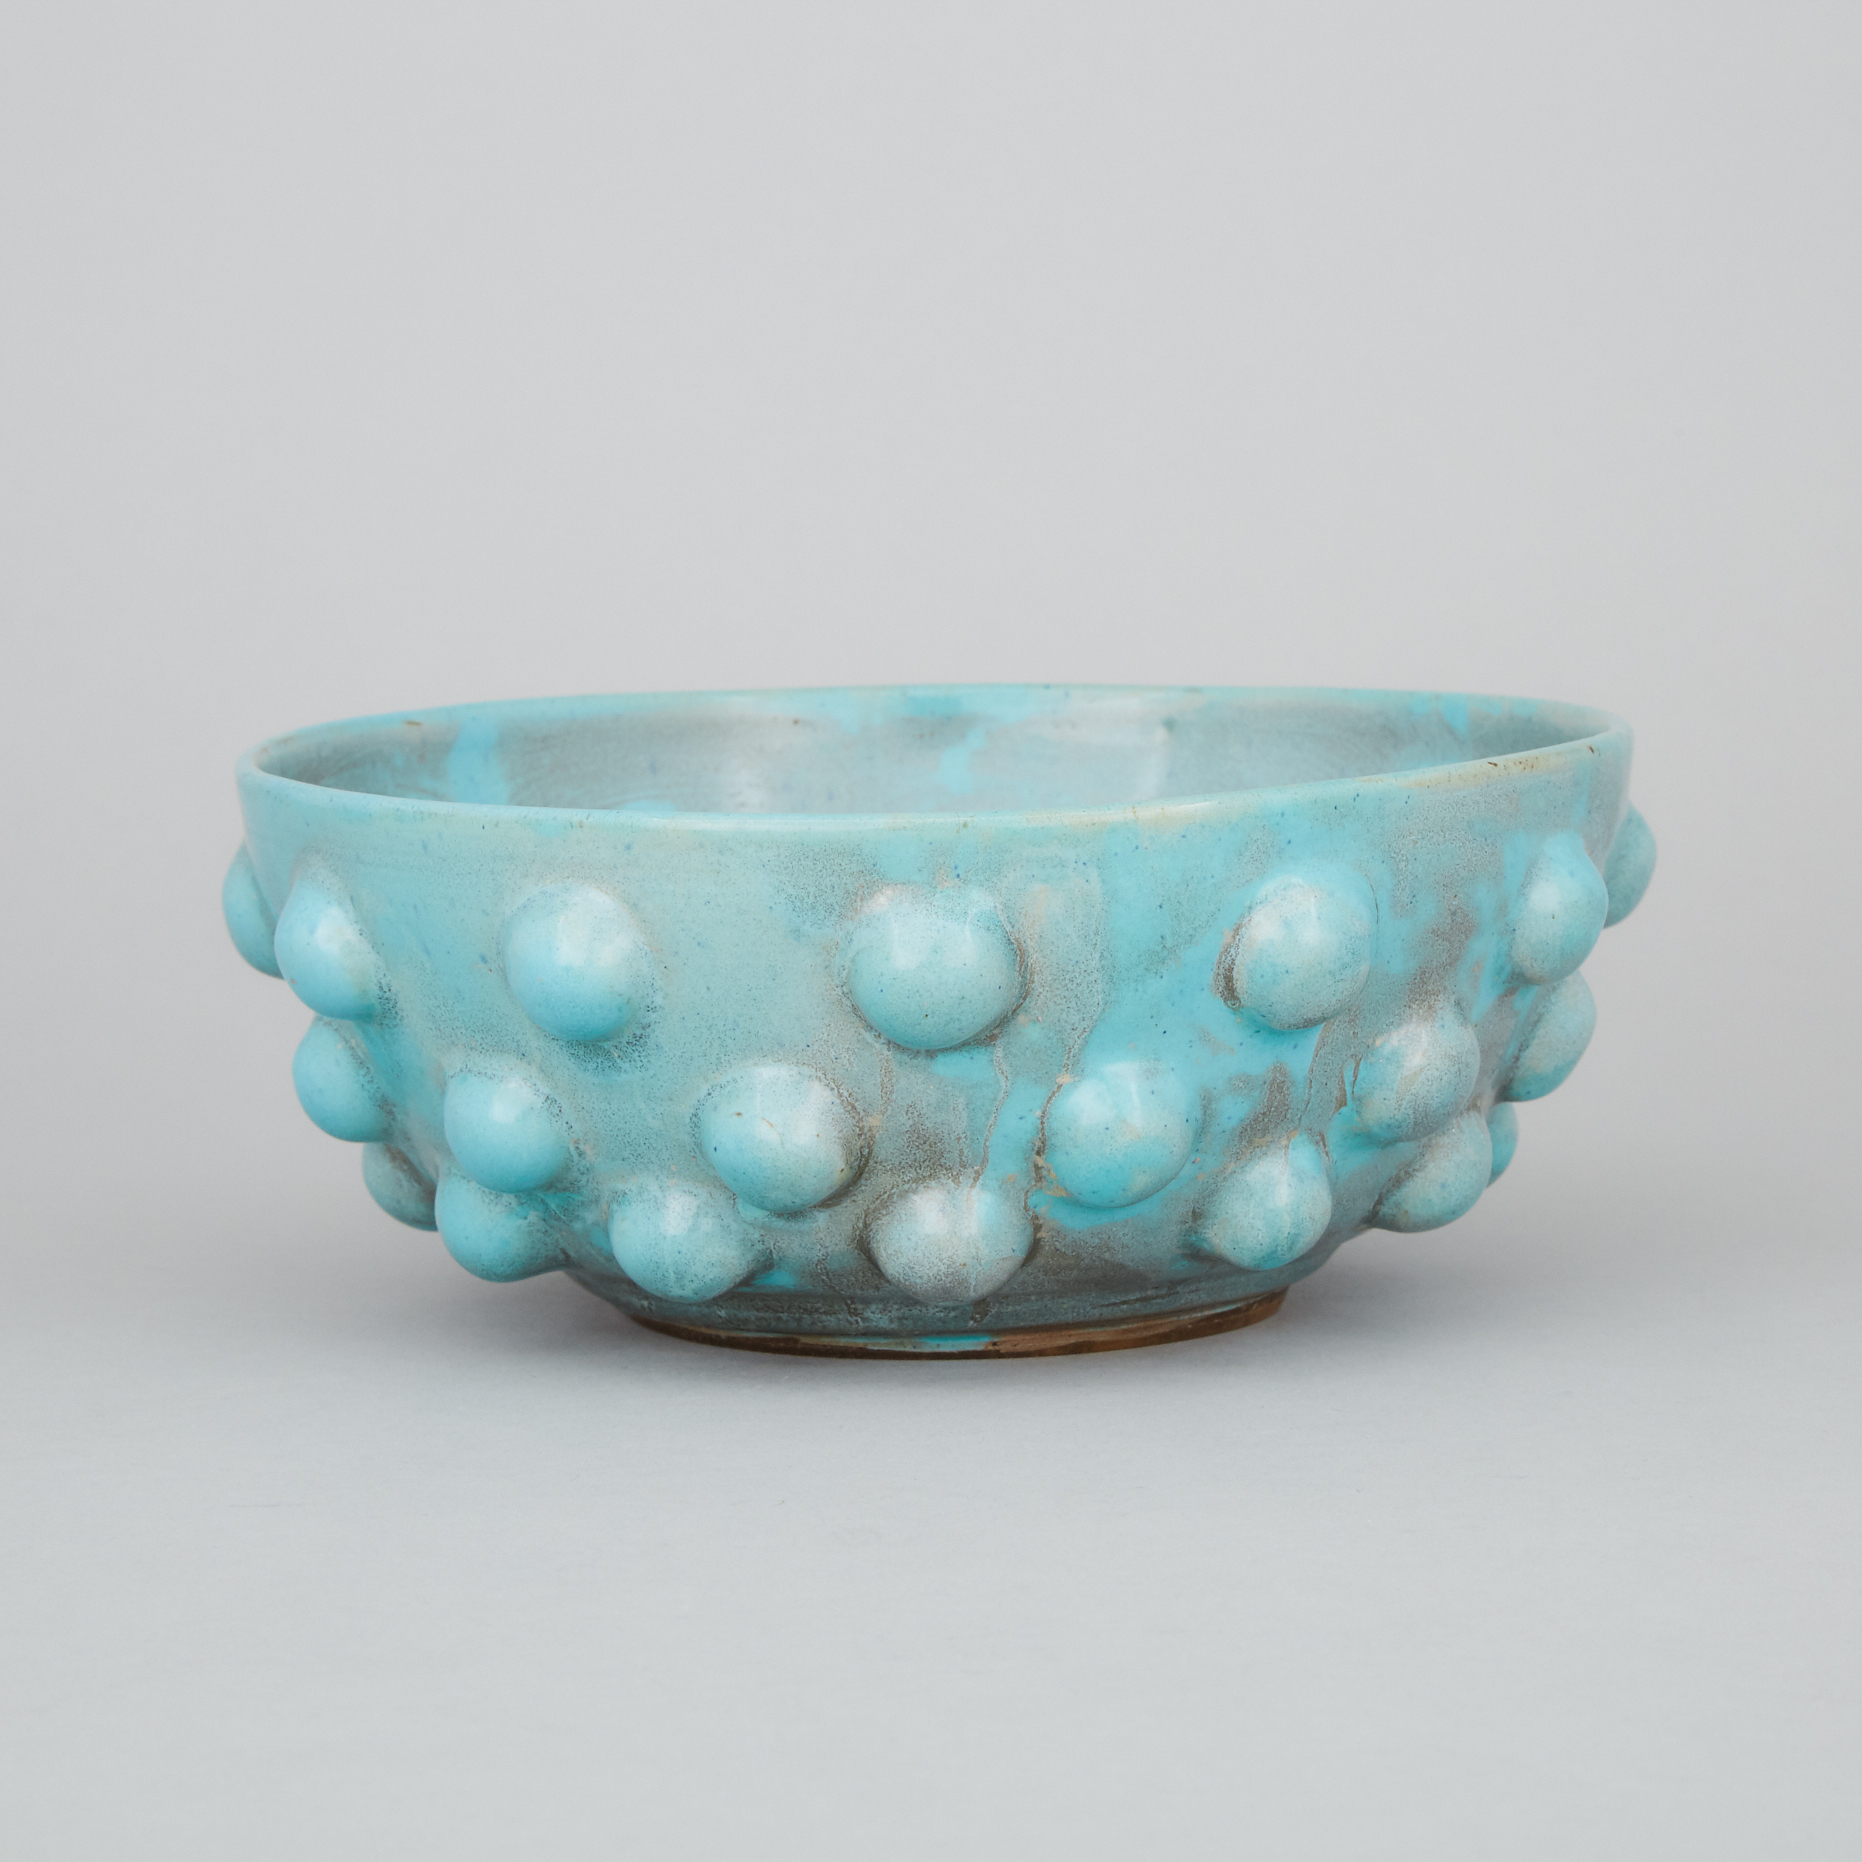 Kjeld & Erica Deichmann (Canadian, 1900–1963 and 1913–2007), Mottled Turquoise Glazed 'Kish' Bowl, c.1942